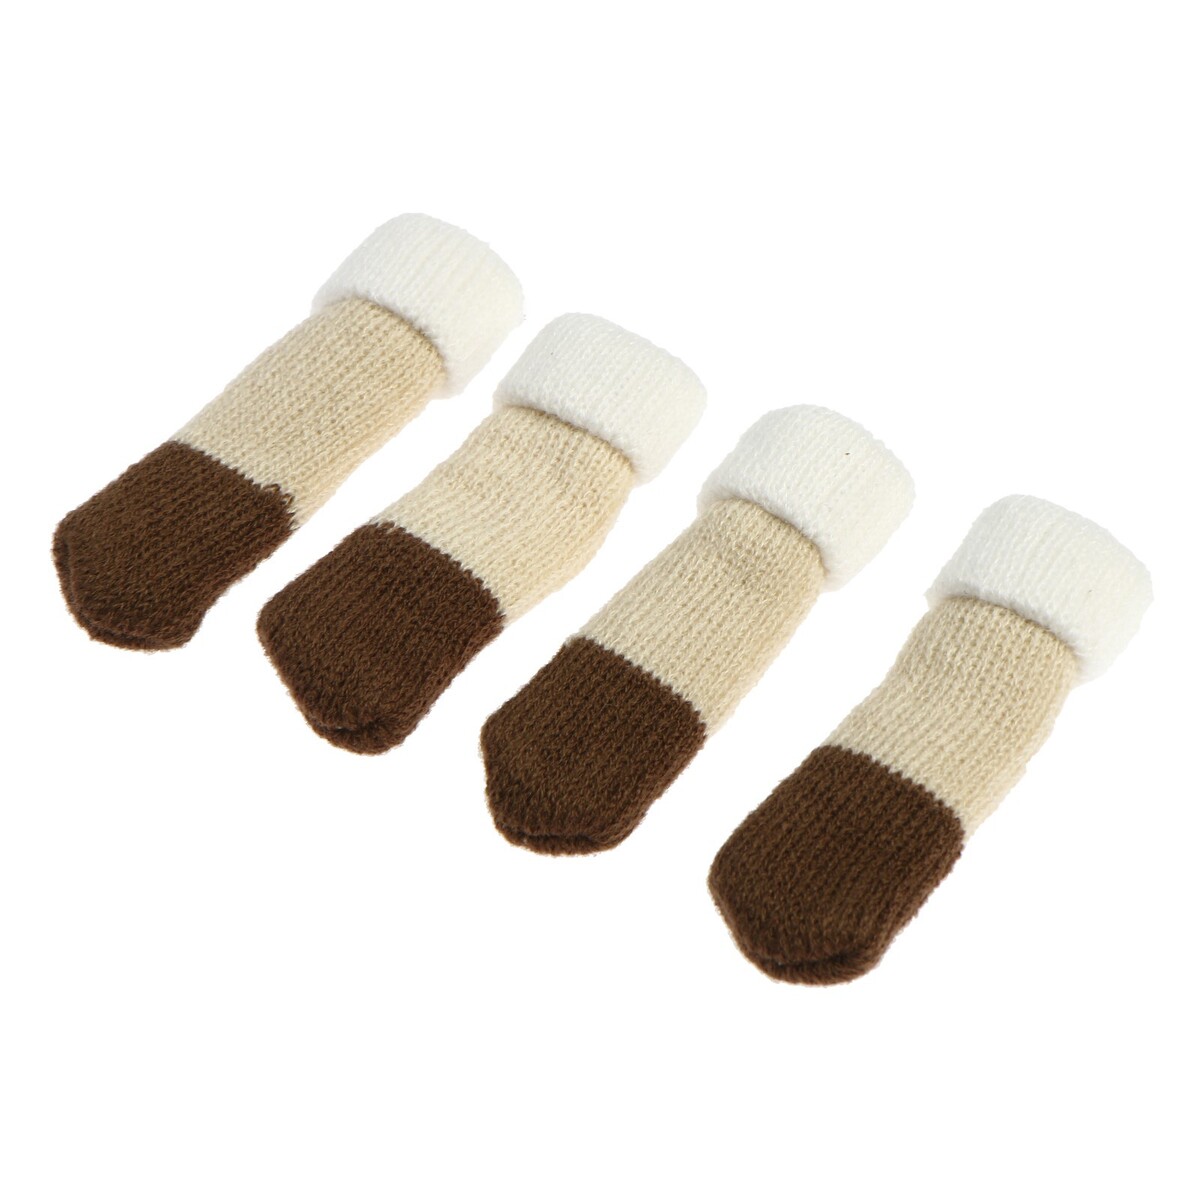 Носки для мебели cappio, цвет бежево-коричневый комплект для перетяжки мебели 50 × 100 см иск кожа поролон 20 мм коричневый